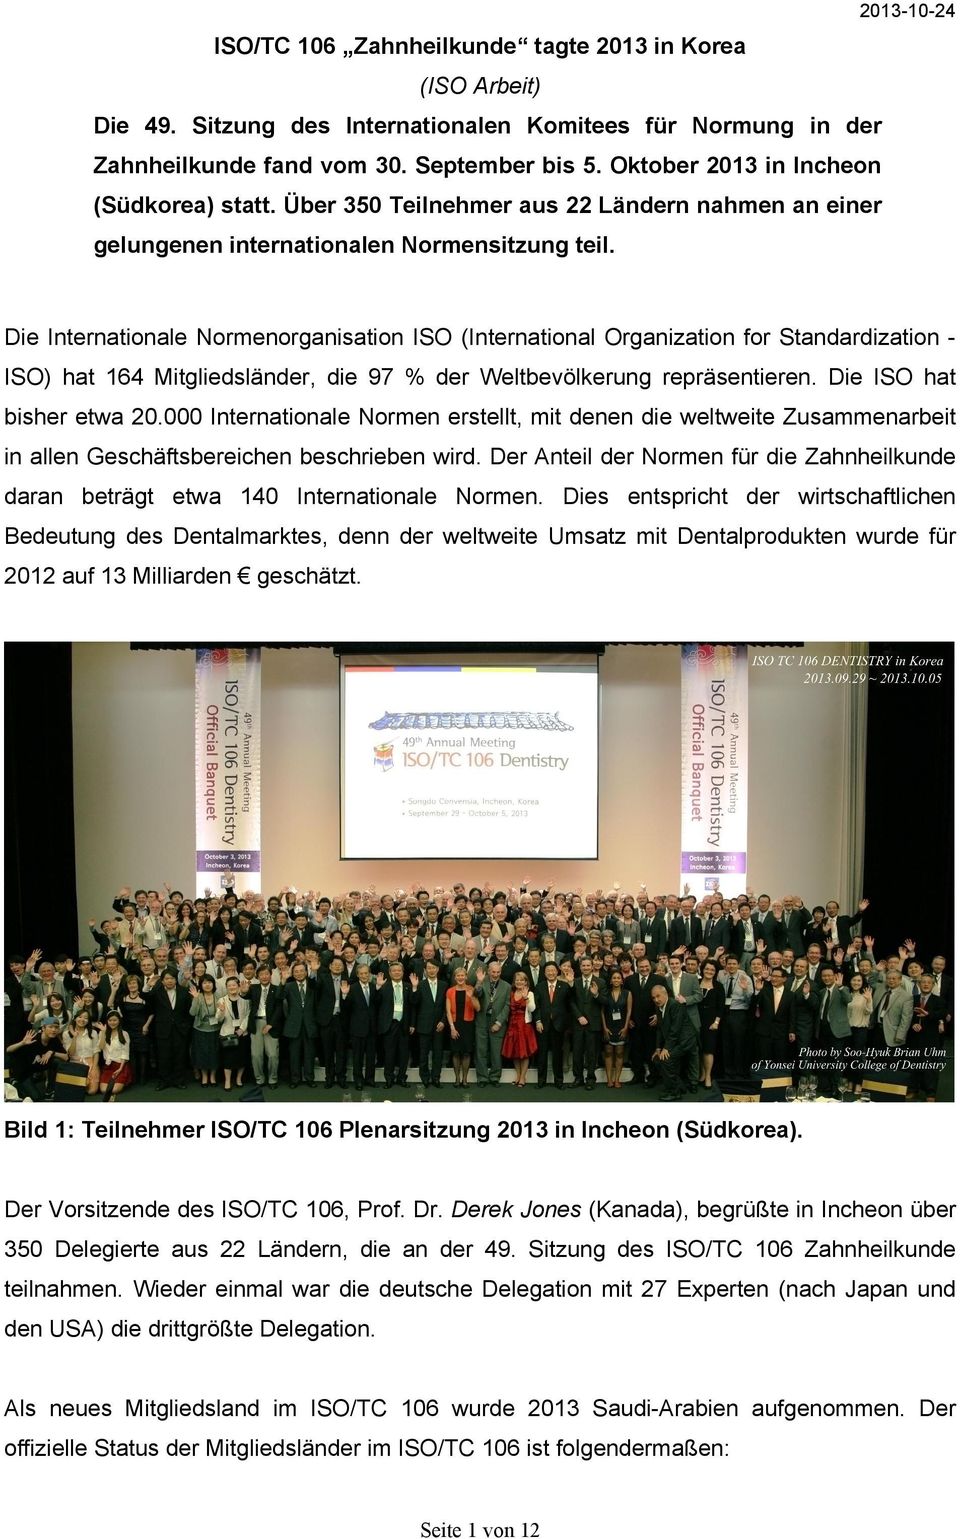 Die Internationale Normenorganisation ISO (International Organization for Standardization ISO) hat 164 Mitgliedsländer, die 97 % der Weltbevölkerung repräsentieren. Die ISO hat bisher etwa 20.